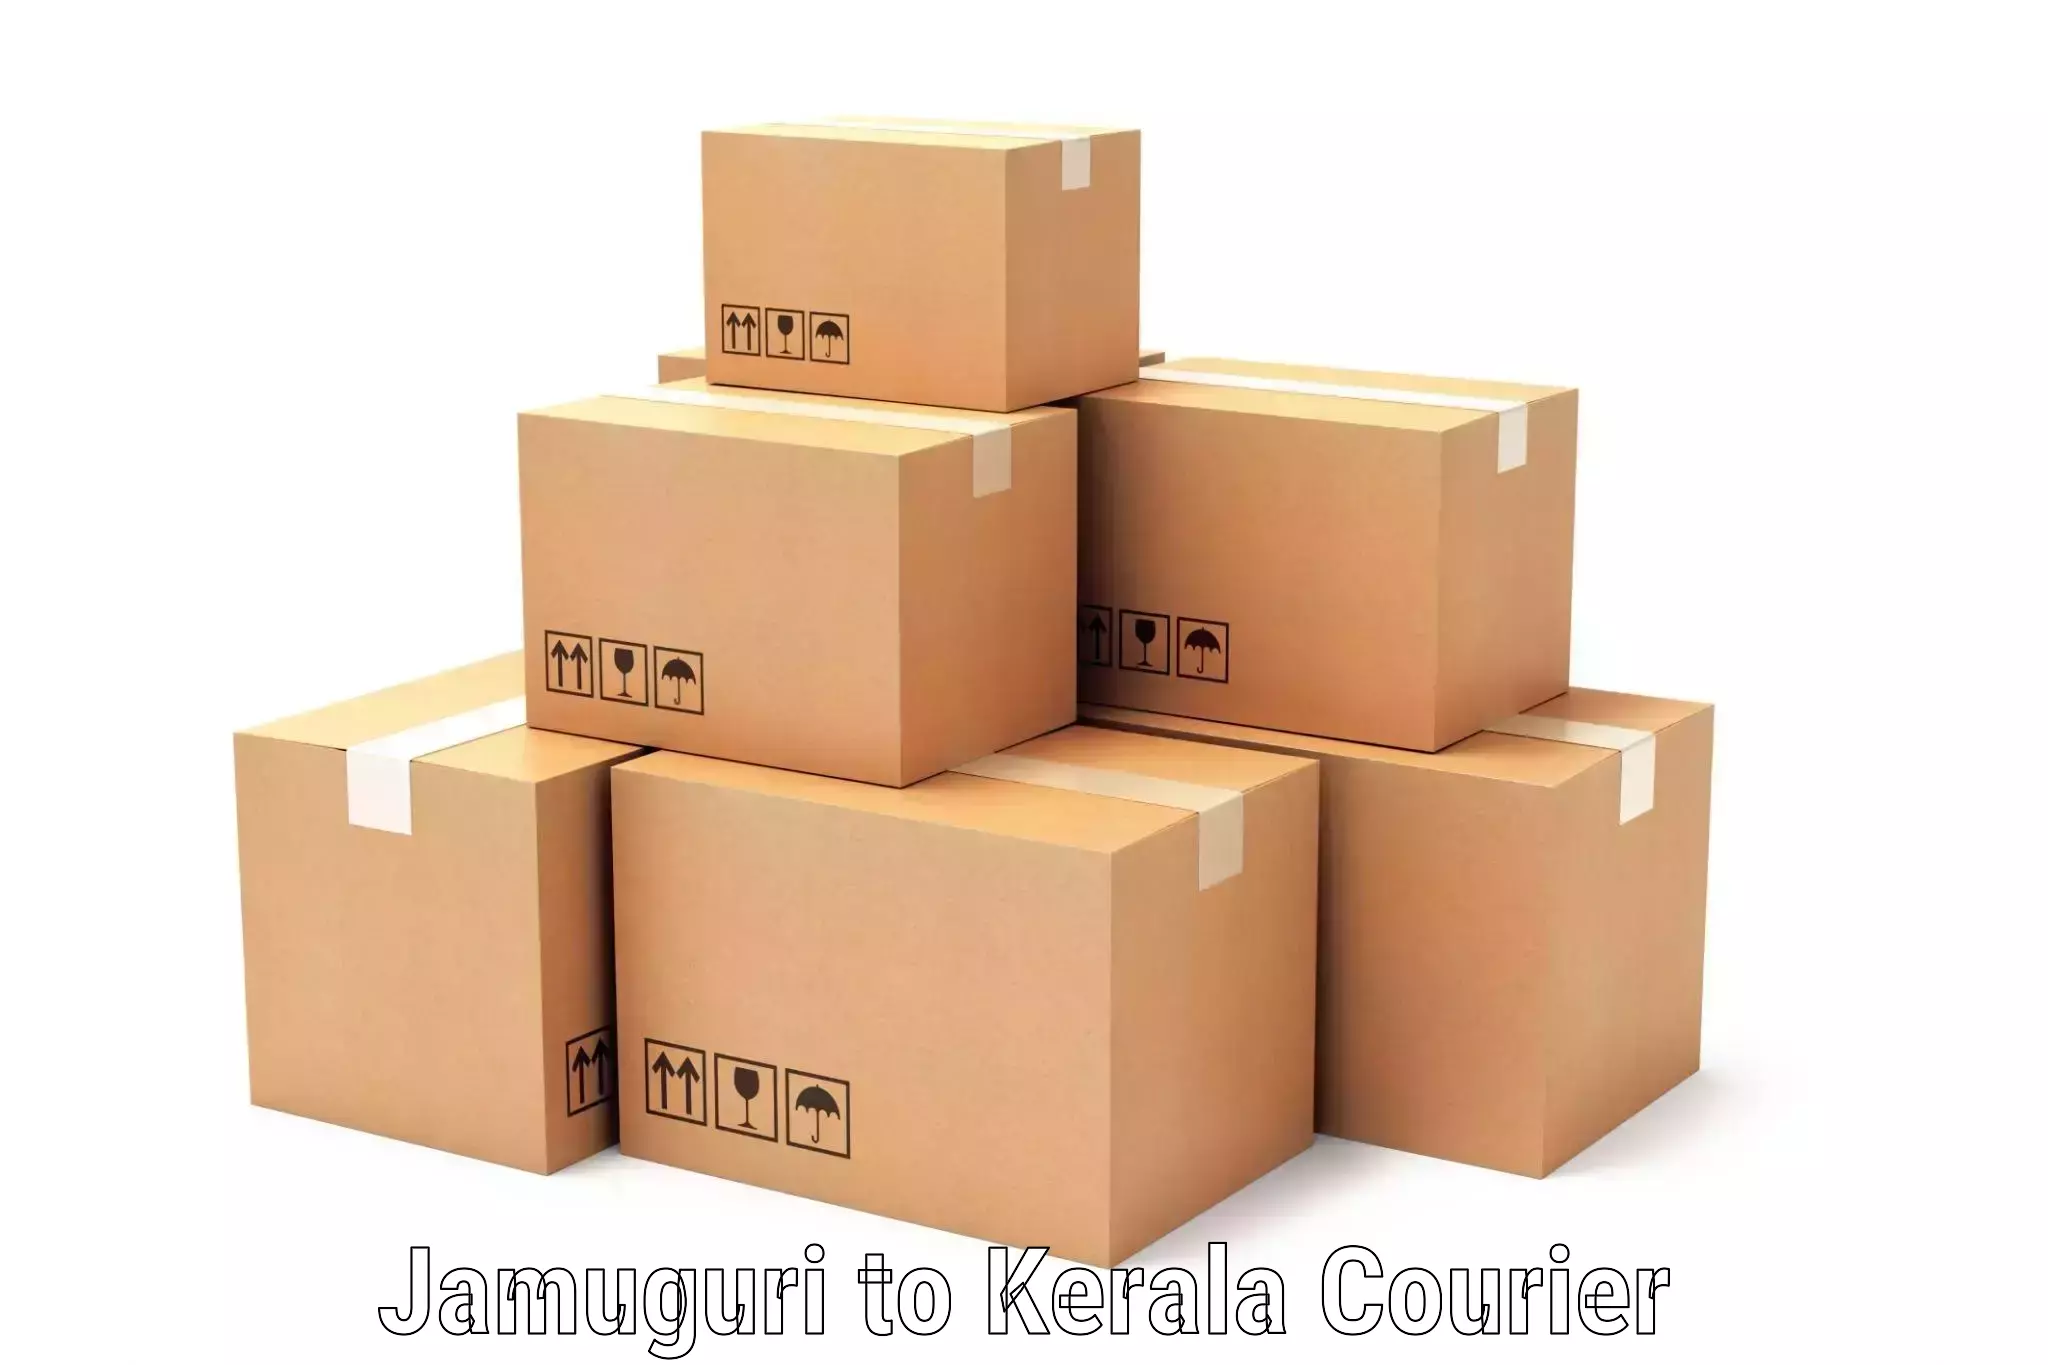 24-hour courier service Jamuguri to Pala